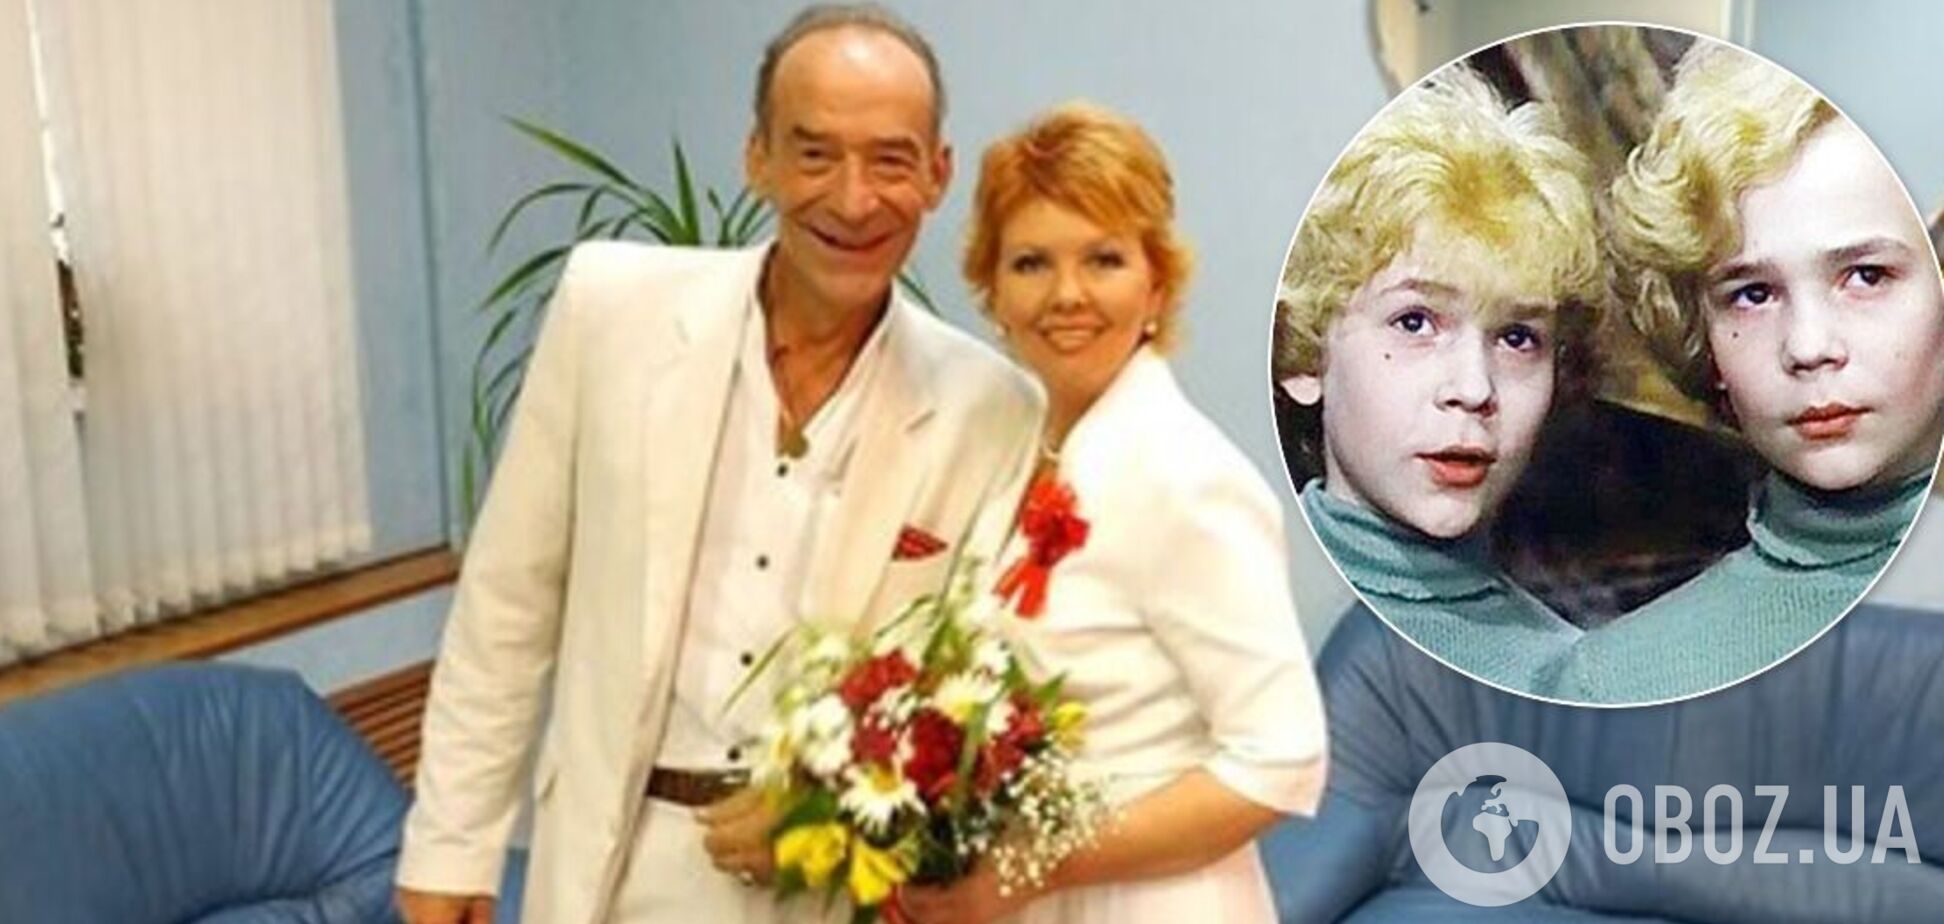 Владимир Торсуев в пятый раз женился